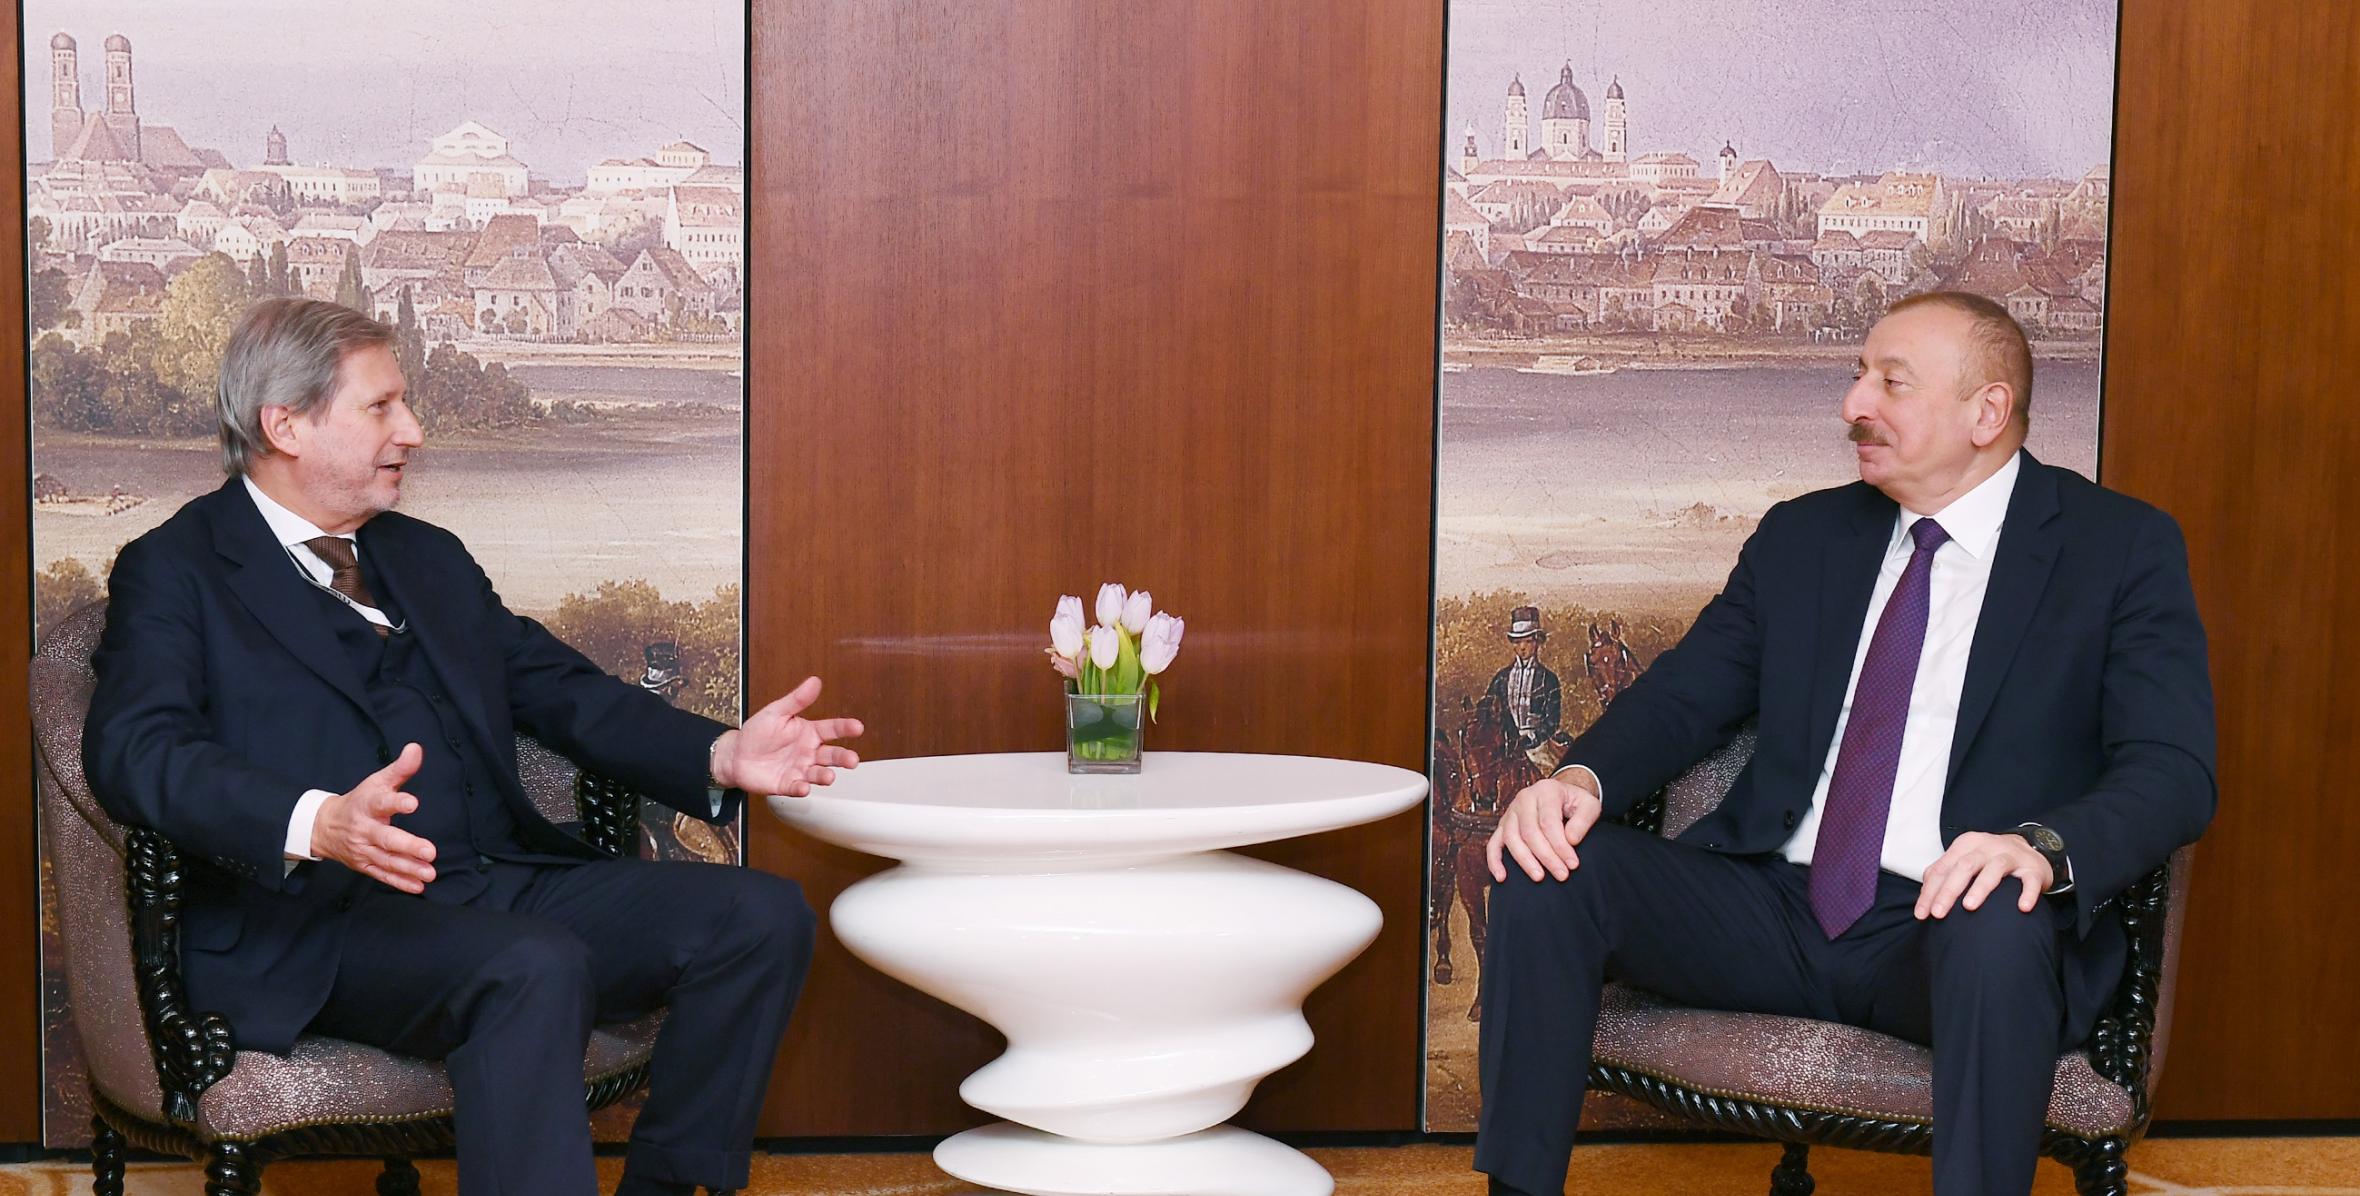 Ilham Aliyev met with European Union Commissioner in Munich